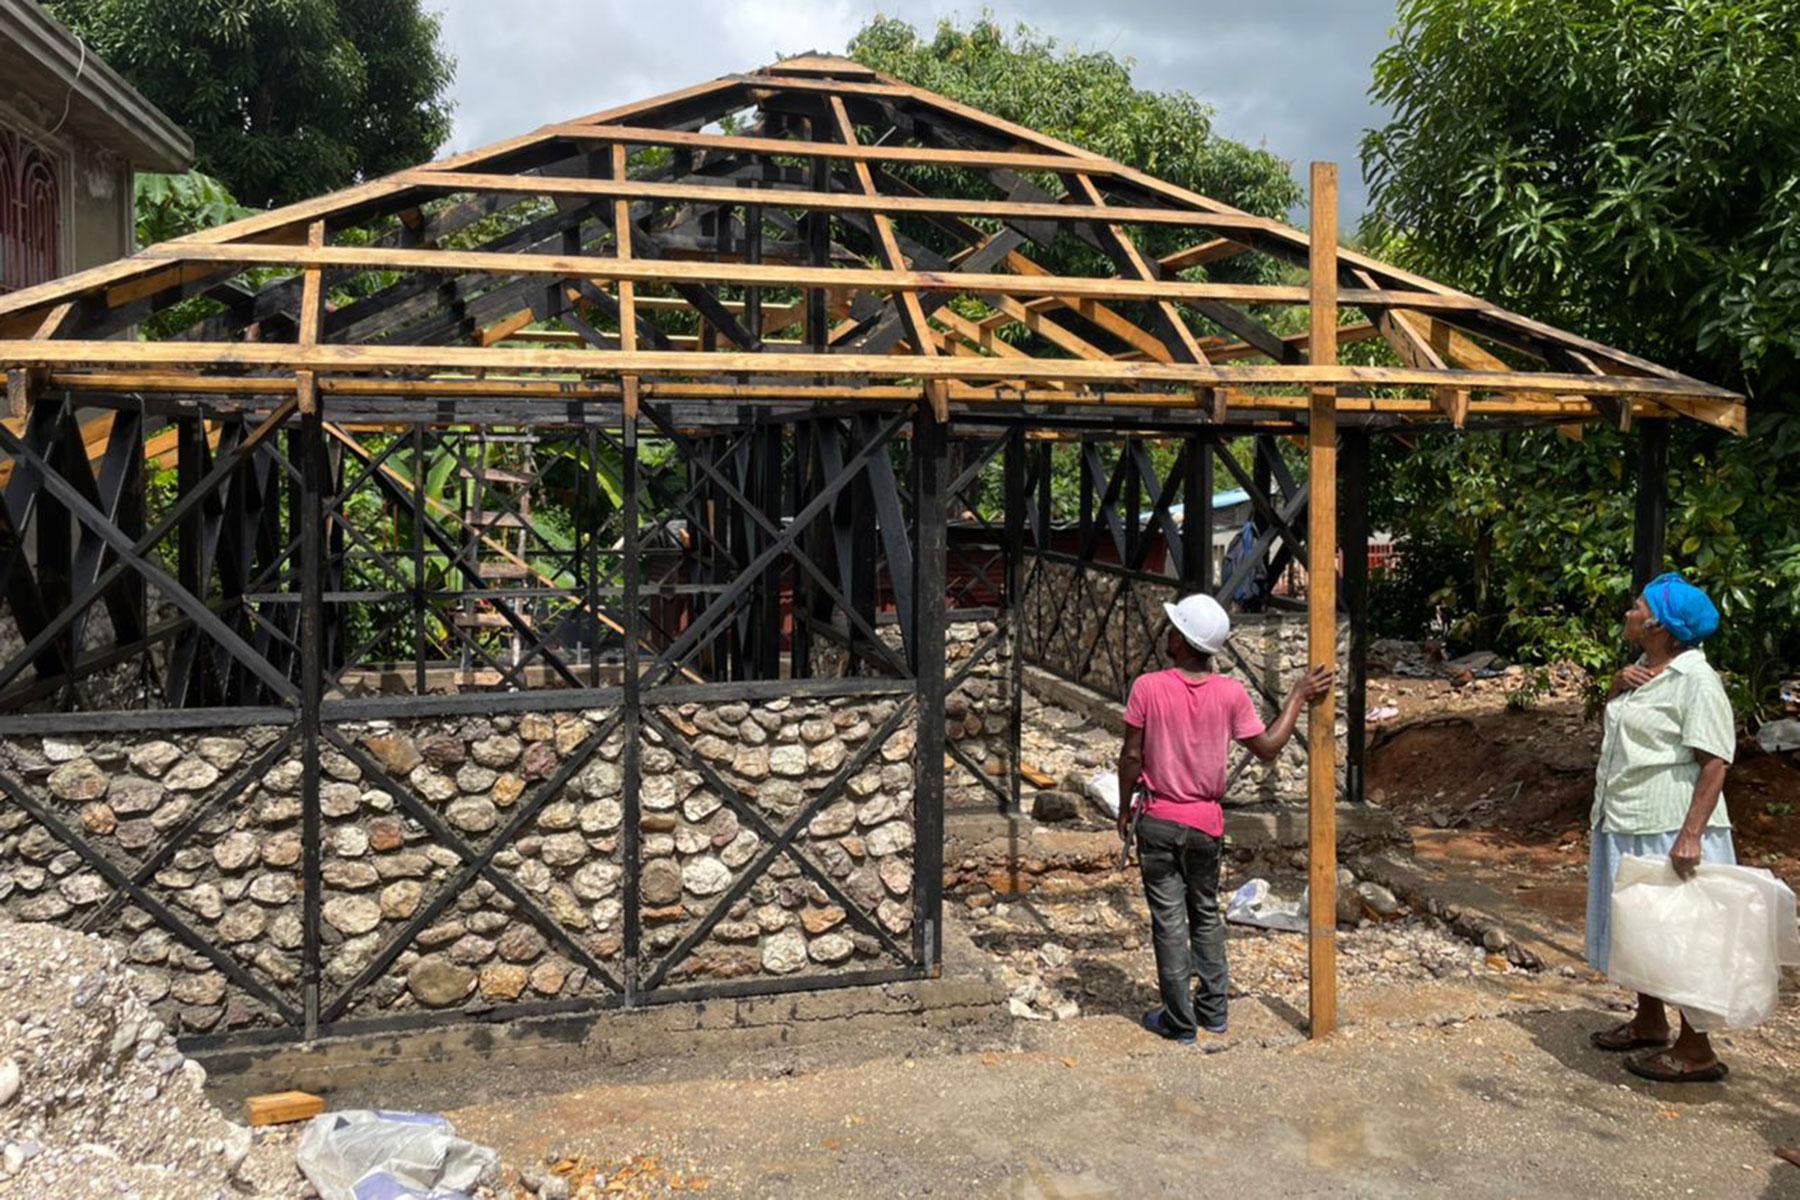 Im Rahmen des Wohnungsbauprojekts stellen die Teilnehmenden Steine, Holz und Lebensmittel für die Bauarbeiter zur Verfügung. Marie Nusia, eine Projektteilnehmerin, beobachtet den Fortschritt beim Bau ihres neuen hurrikan- und erdbebensicheren Hauses. Foto: LWB Haiti